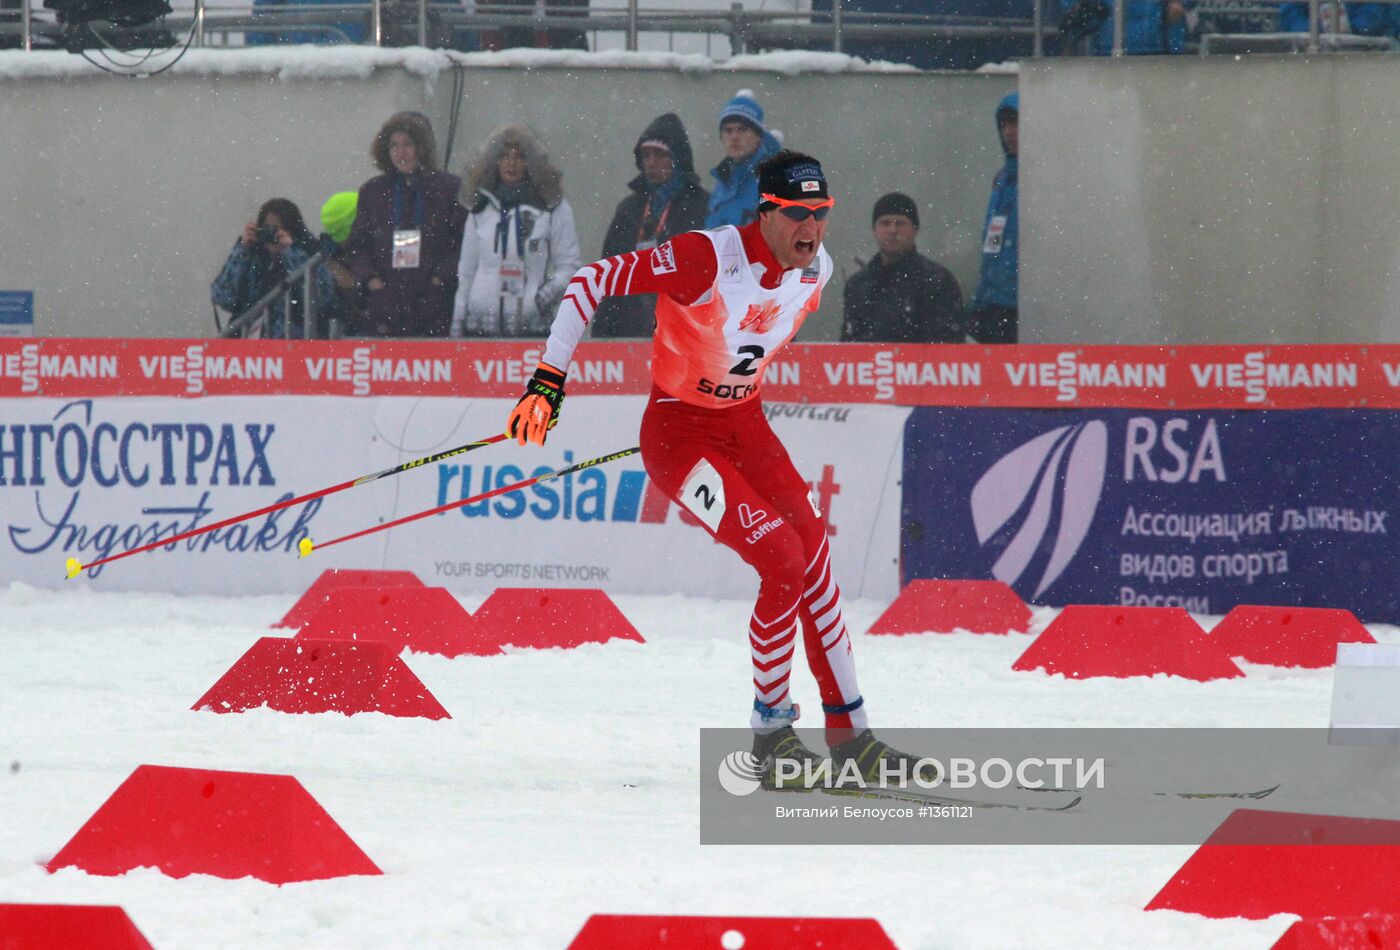 Лыжное двоеборье. VIII этап Кубка мира. Личные соревнования